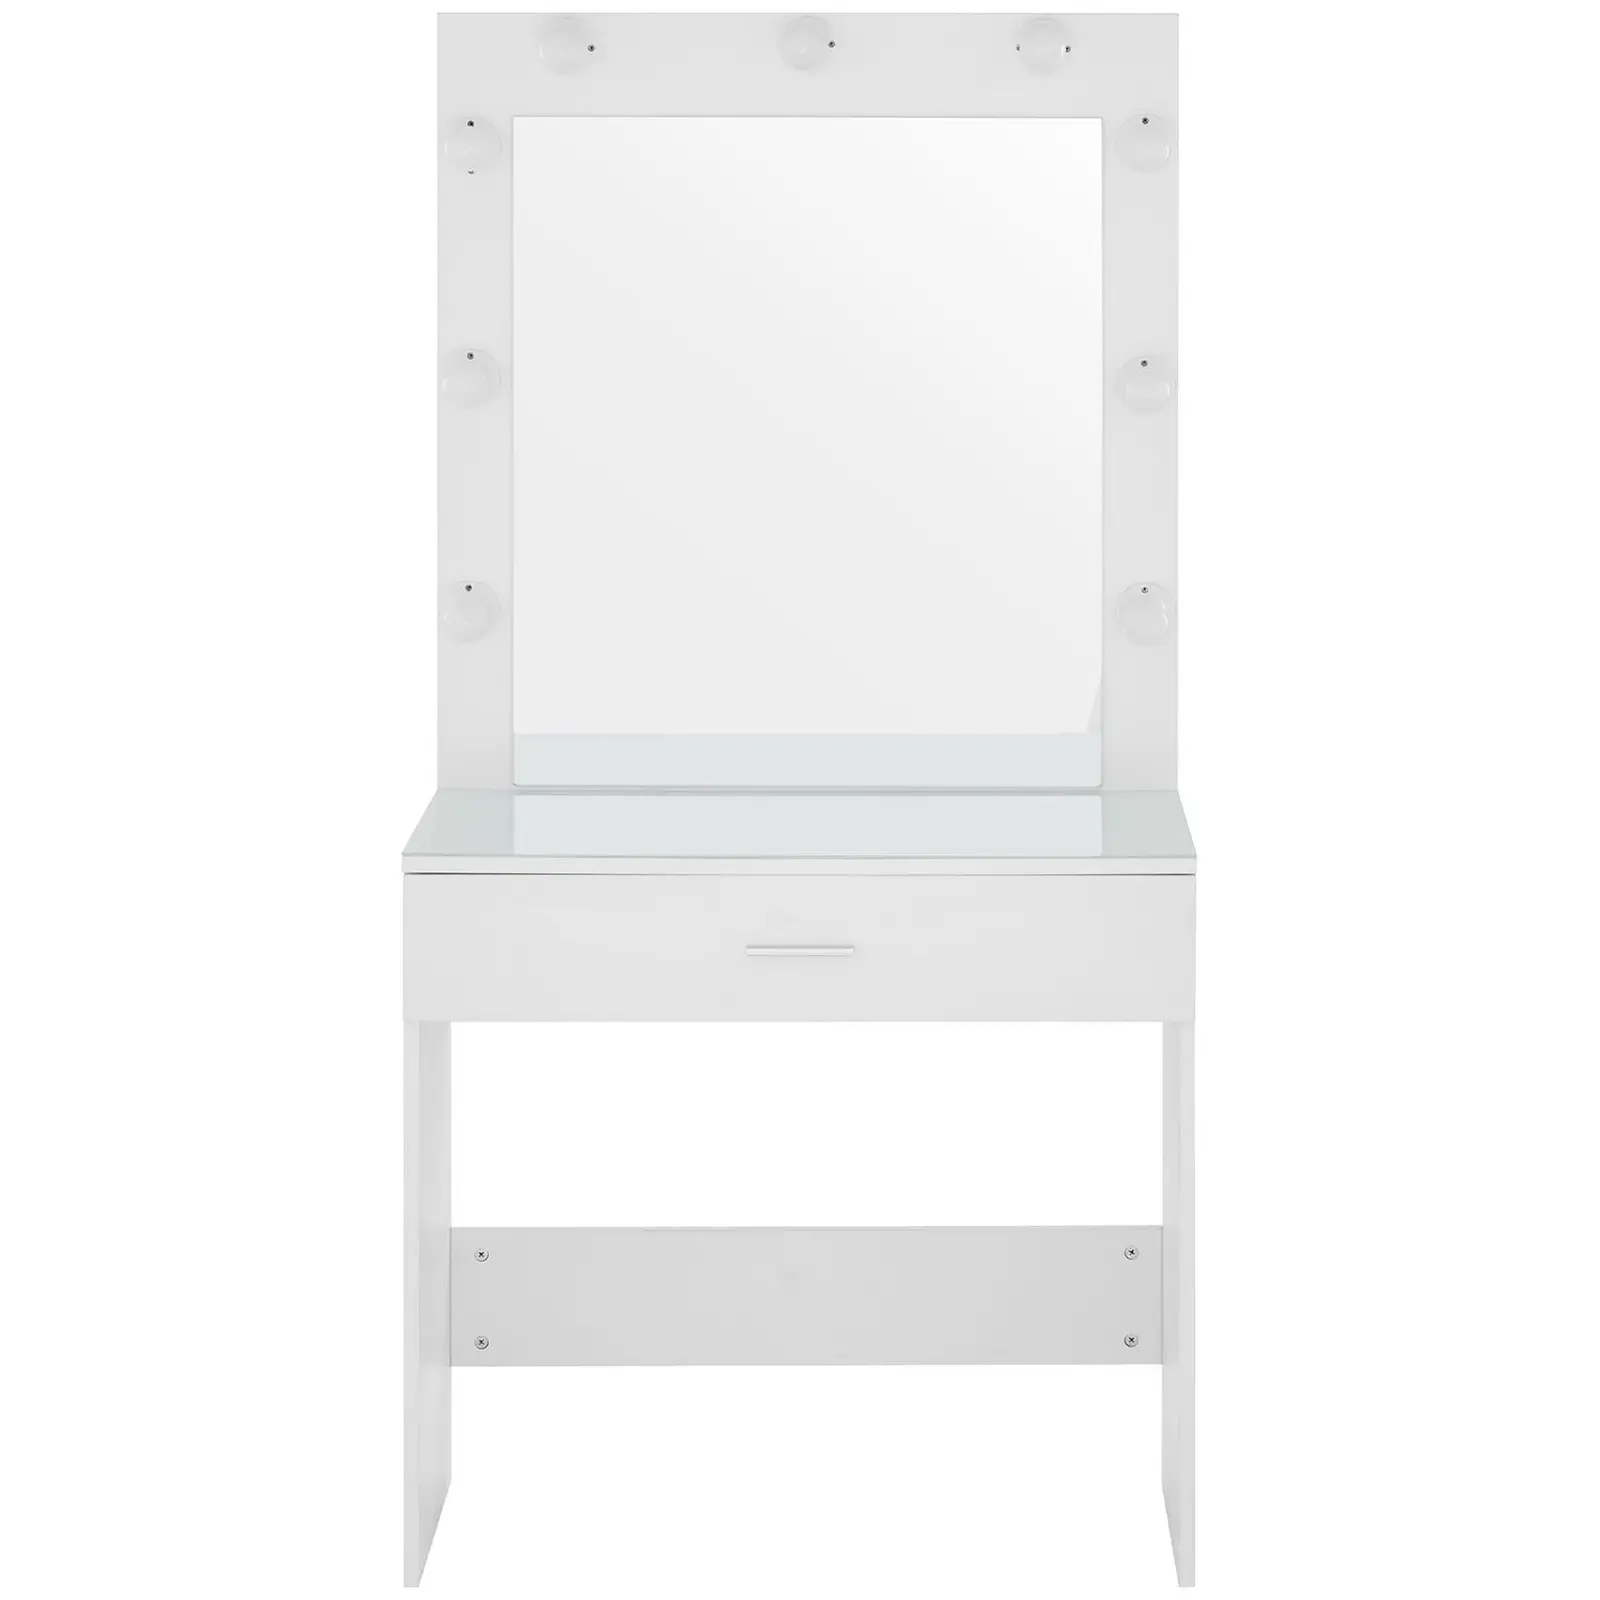 Fésülködőasztal tükörrel és lámpával - 80 x 40 x 160 cm - fehér